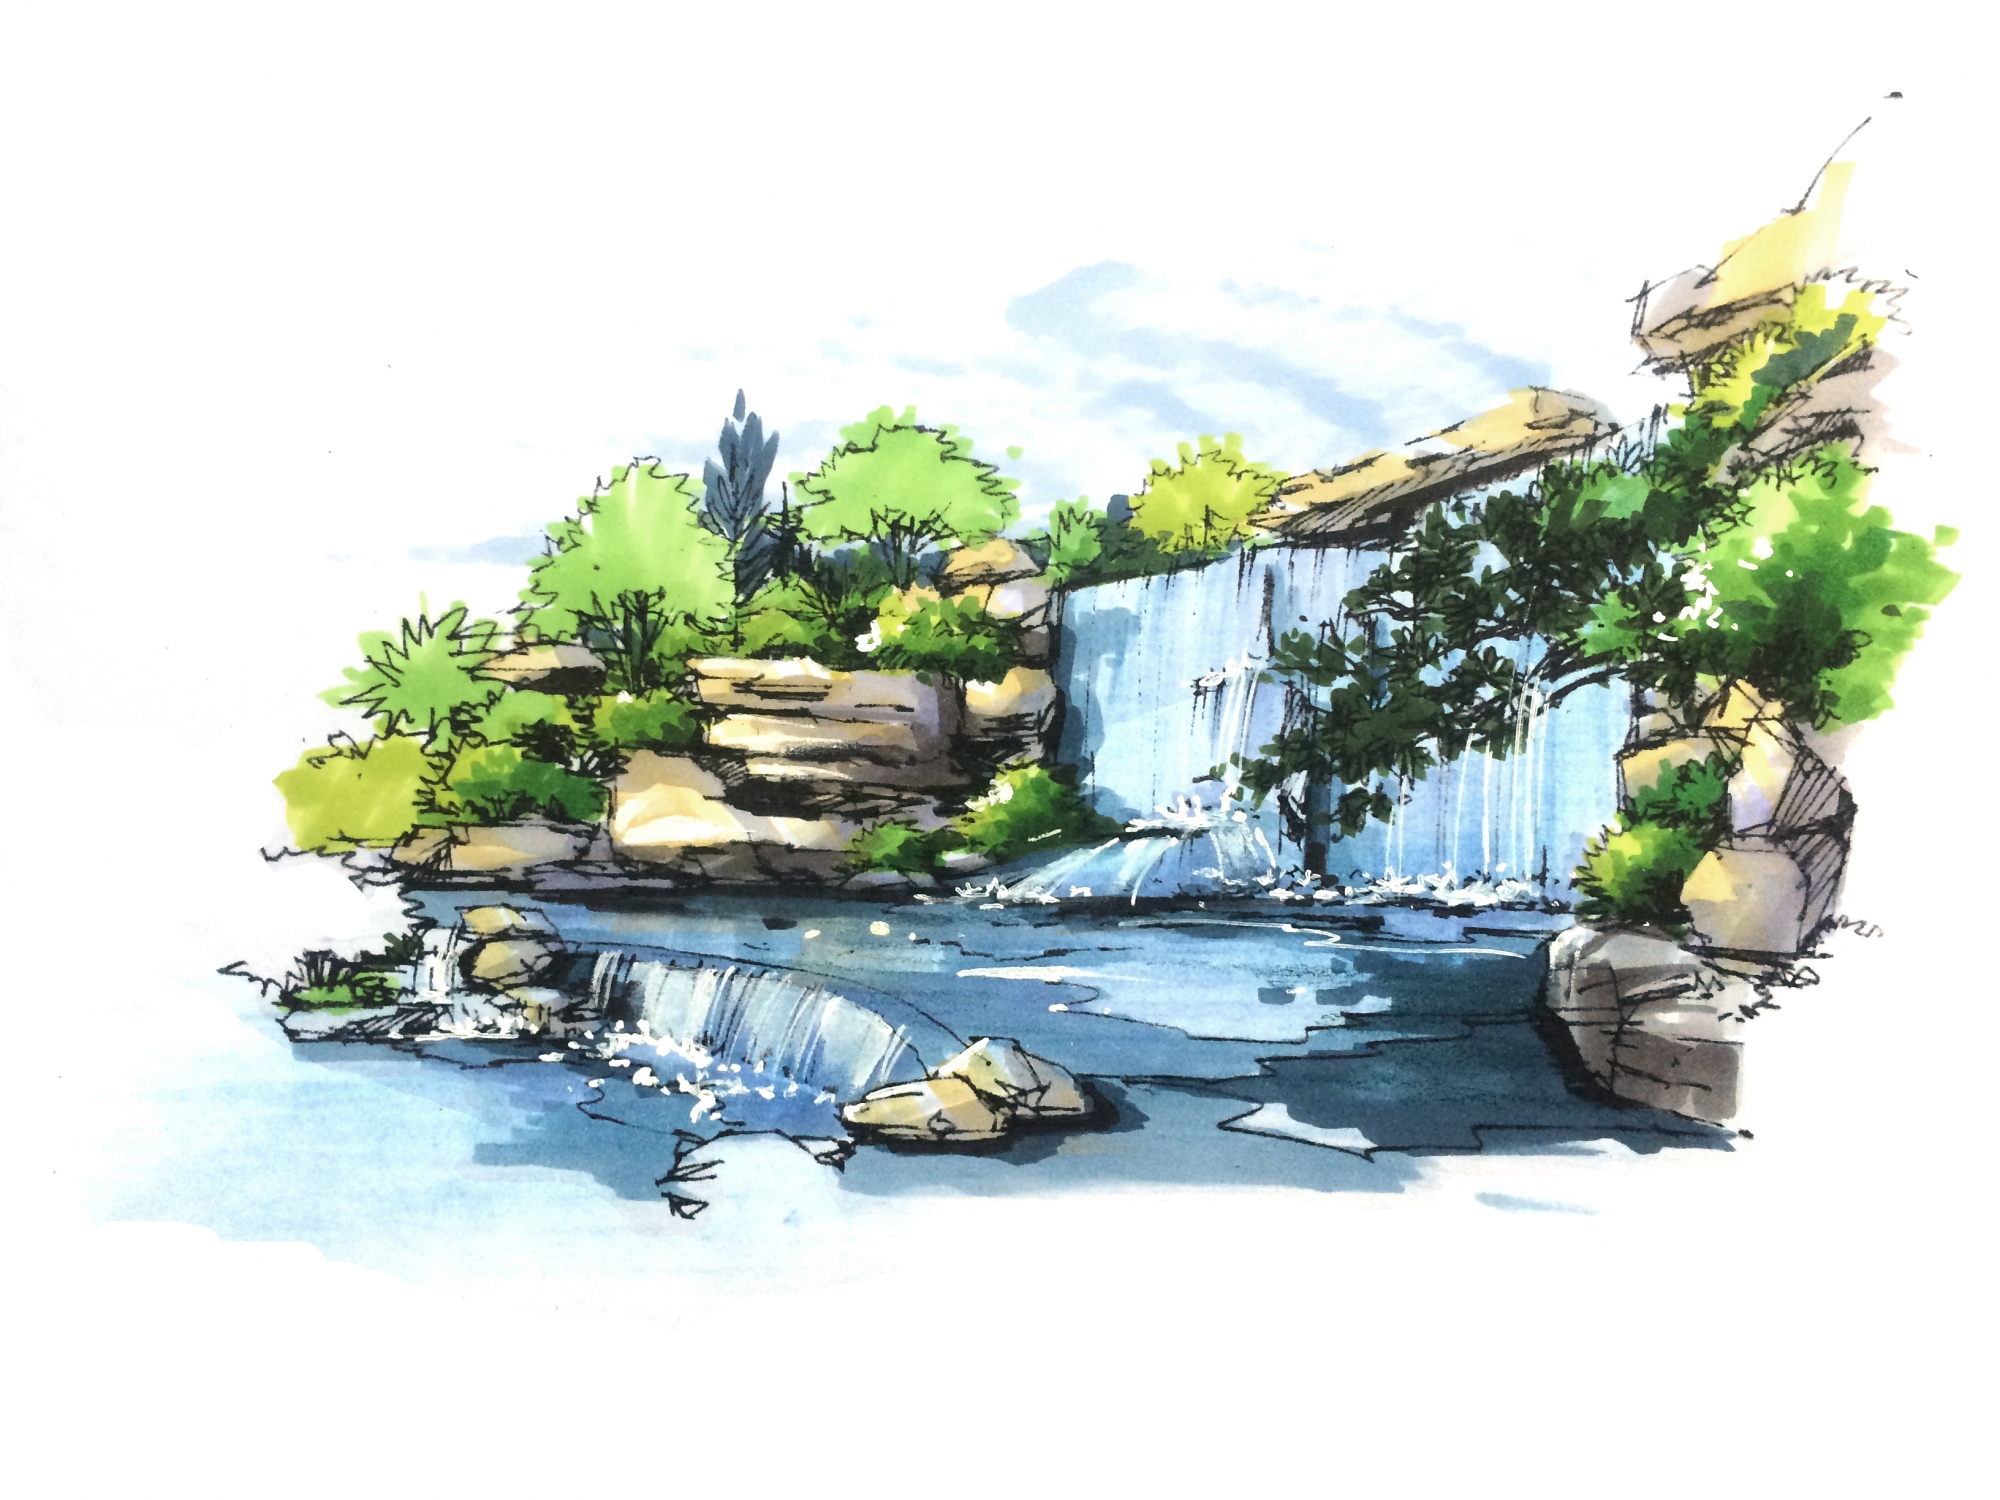 景观手绘水体画法图片